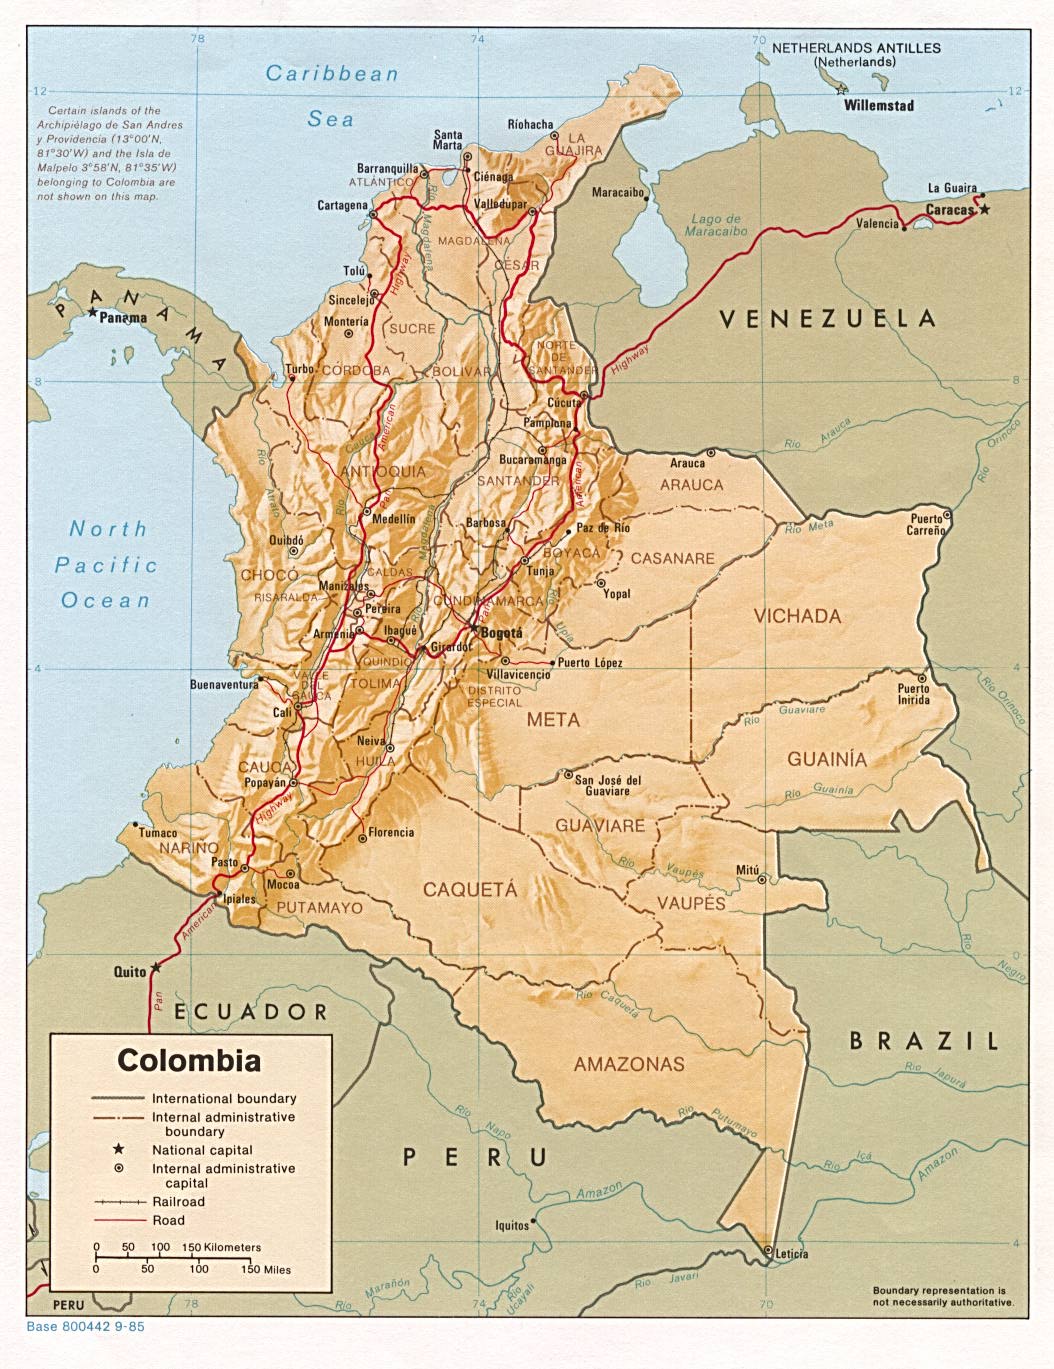 Mapa Relieve Sombreado de Colombia